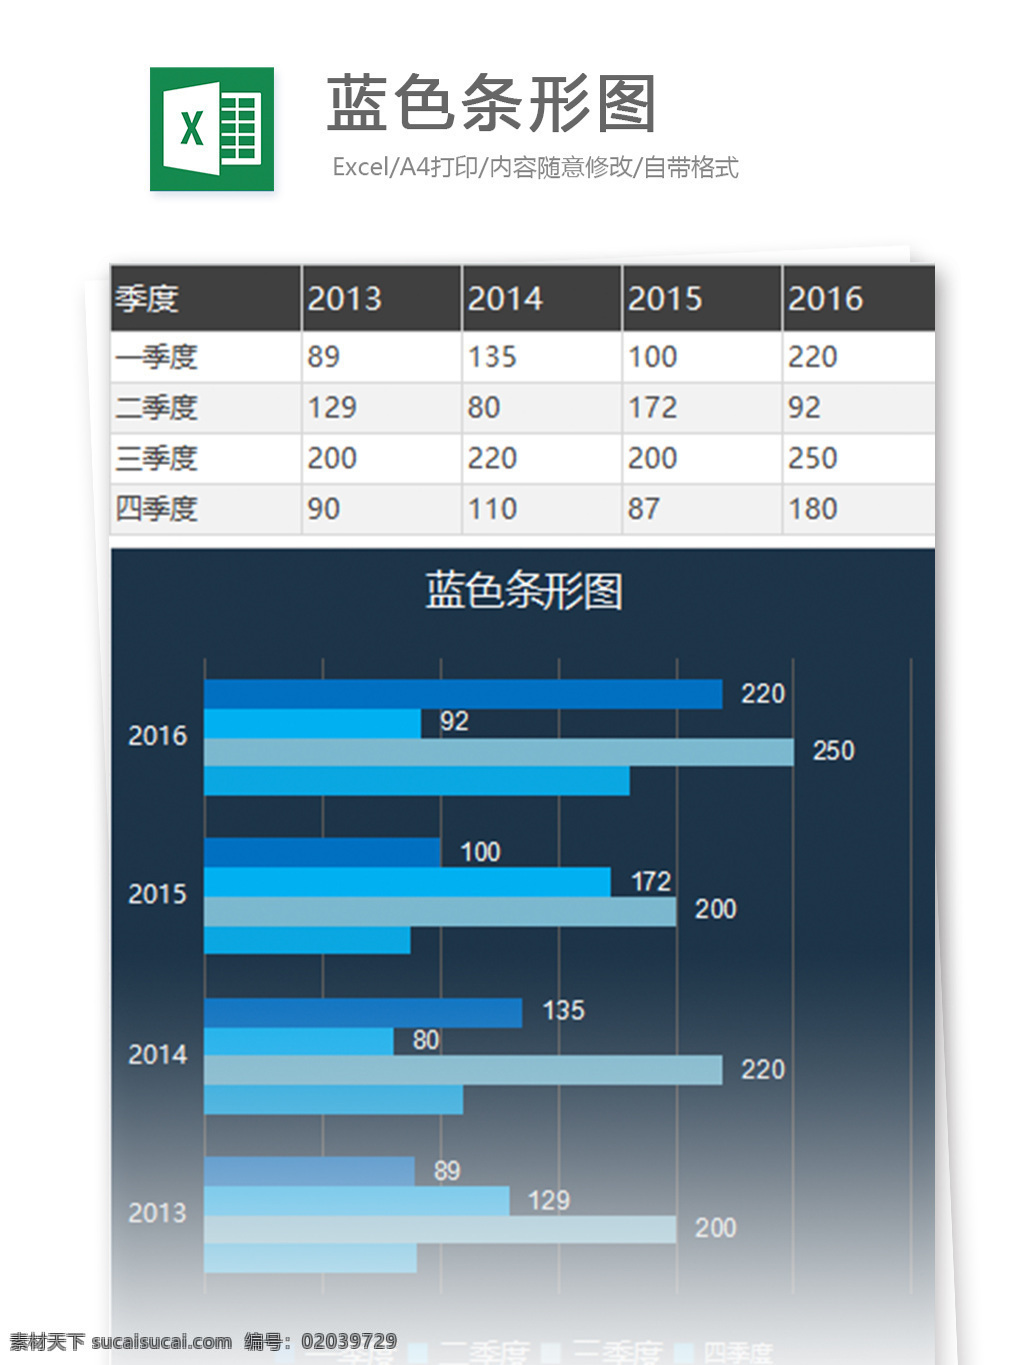 蓝色 条形 图 excel 表格 模板 表格模板 图表 表格设计 统计 报表 公司 财务 数据 财务报表 总结 工具 自动 分析 绩效 图表模板